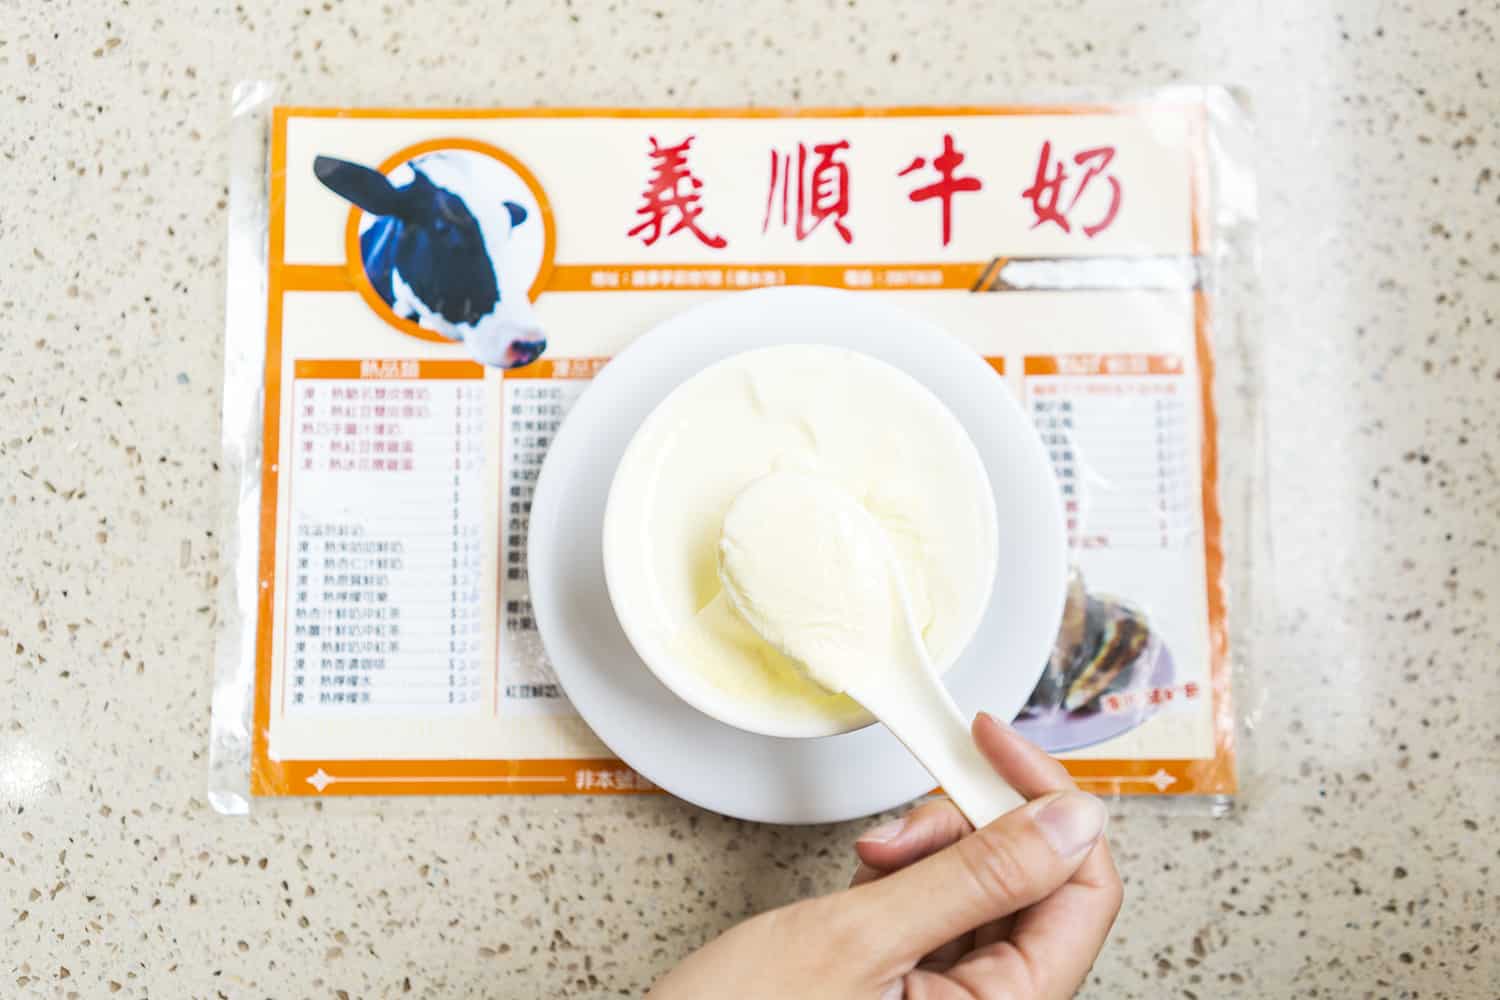 Milk pudding in Hong Kong